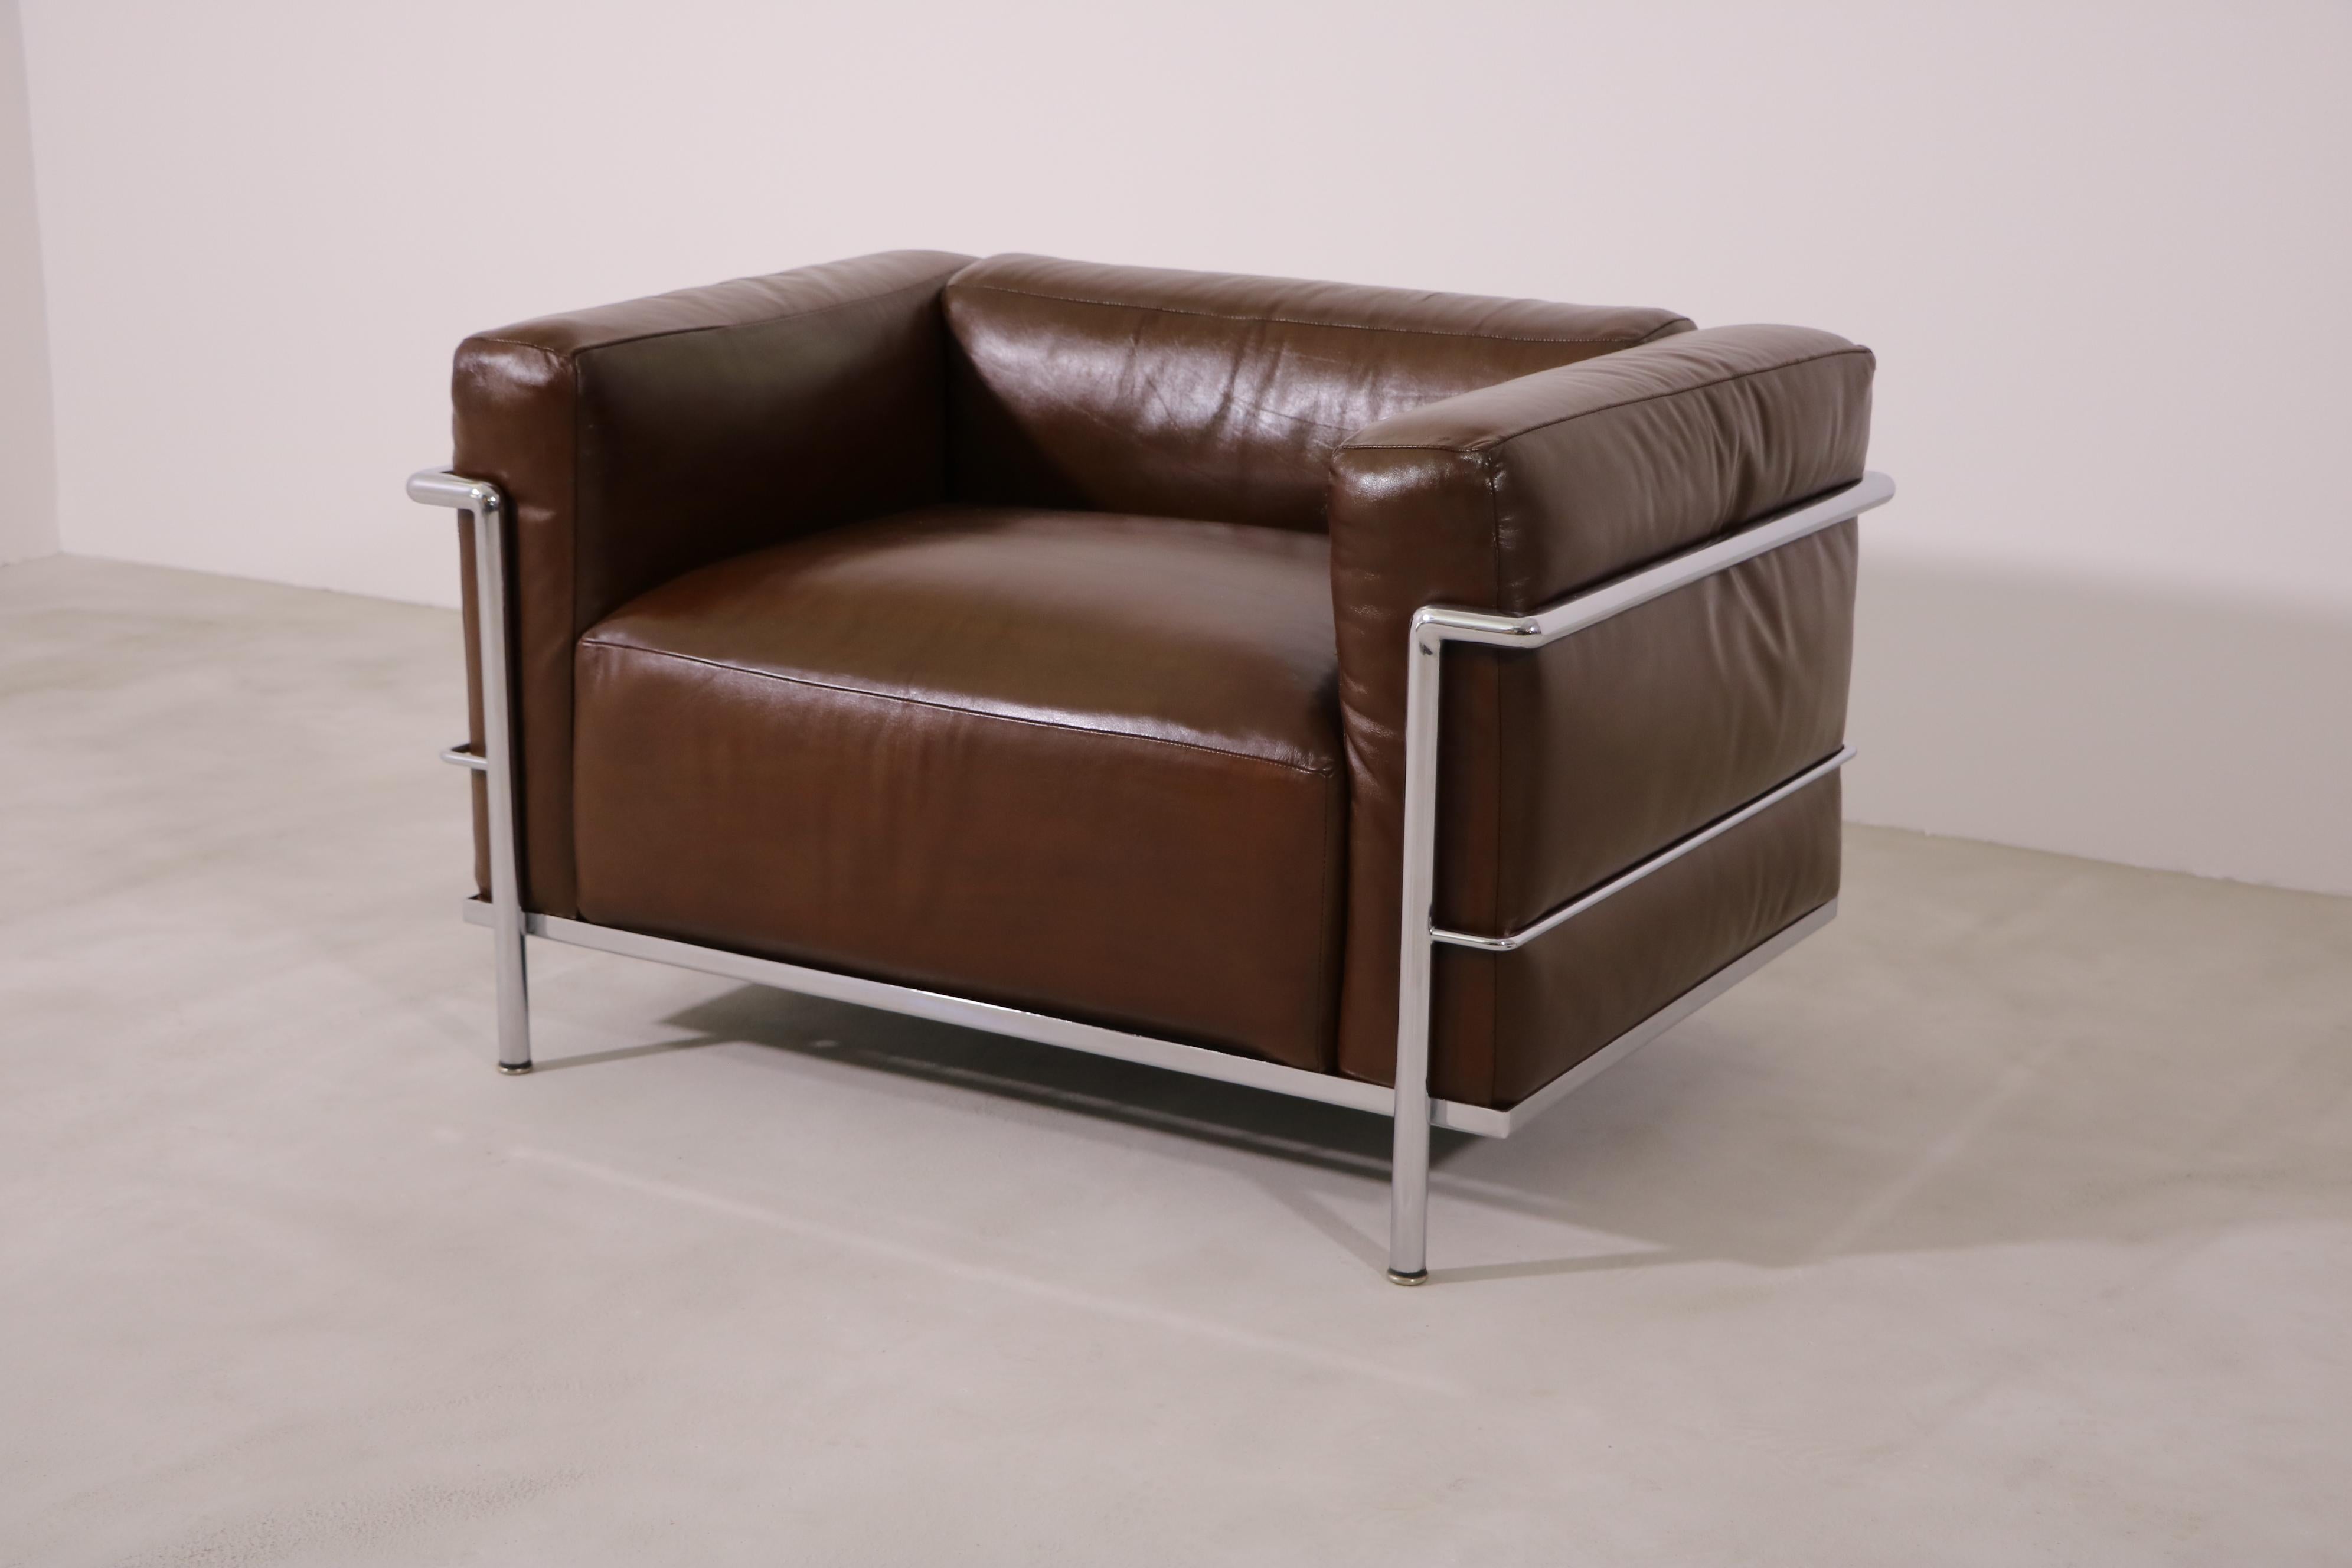 Der Sessel ist eine frühe Produktion von 1970 in braunem Leder mit einer tollen Patina. 
Kleine Seriennummer - 1068, Gummiriemen und das alte Cassina-Logo.
Der Preis versteht sich pro Stuhl.